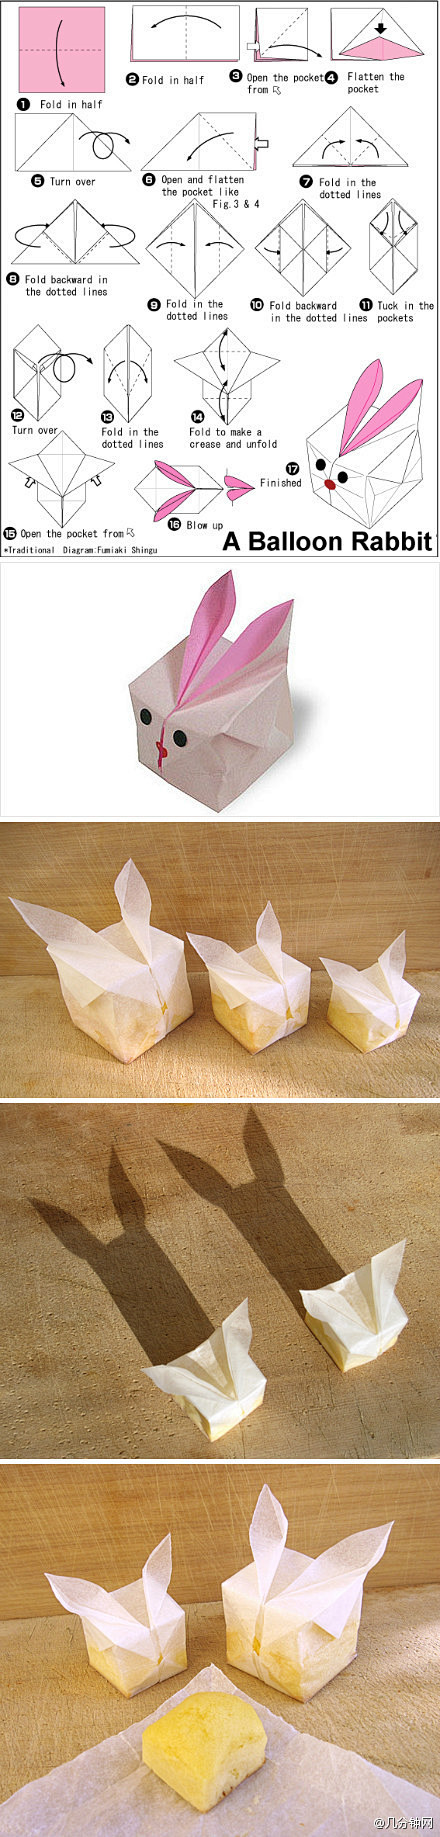 几分钟网：#折纸教程# 可爱气球兔子折纸...